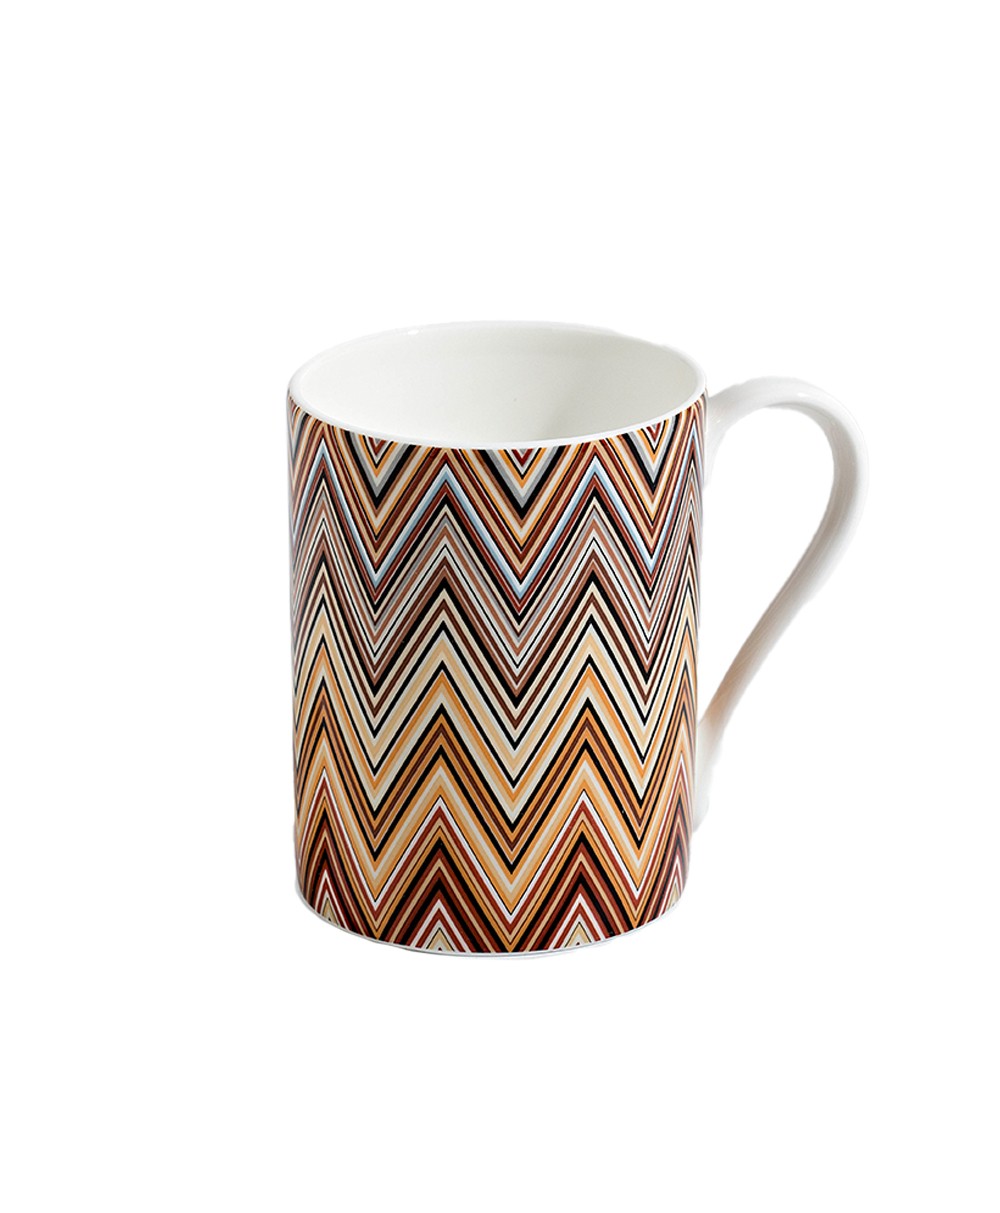 Produktbild der Kaffee Tasse Zig Zag in der Farbe Jarris 148 von Missoni - RAUM concept store